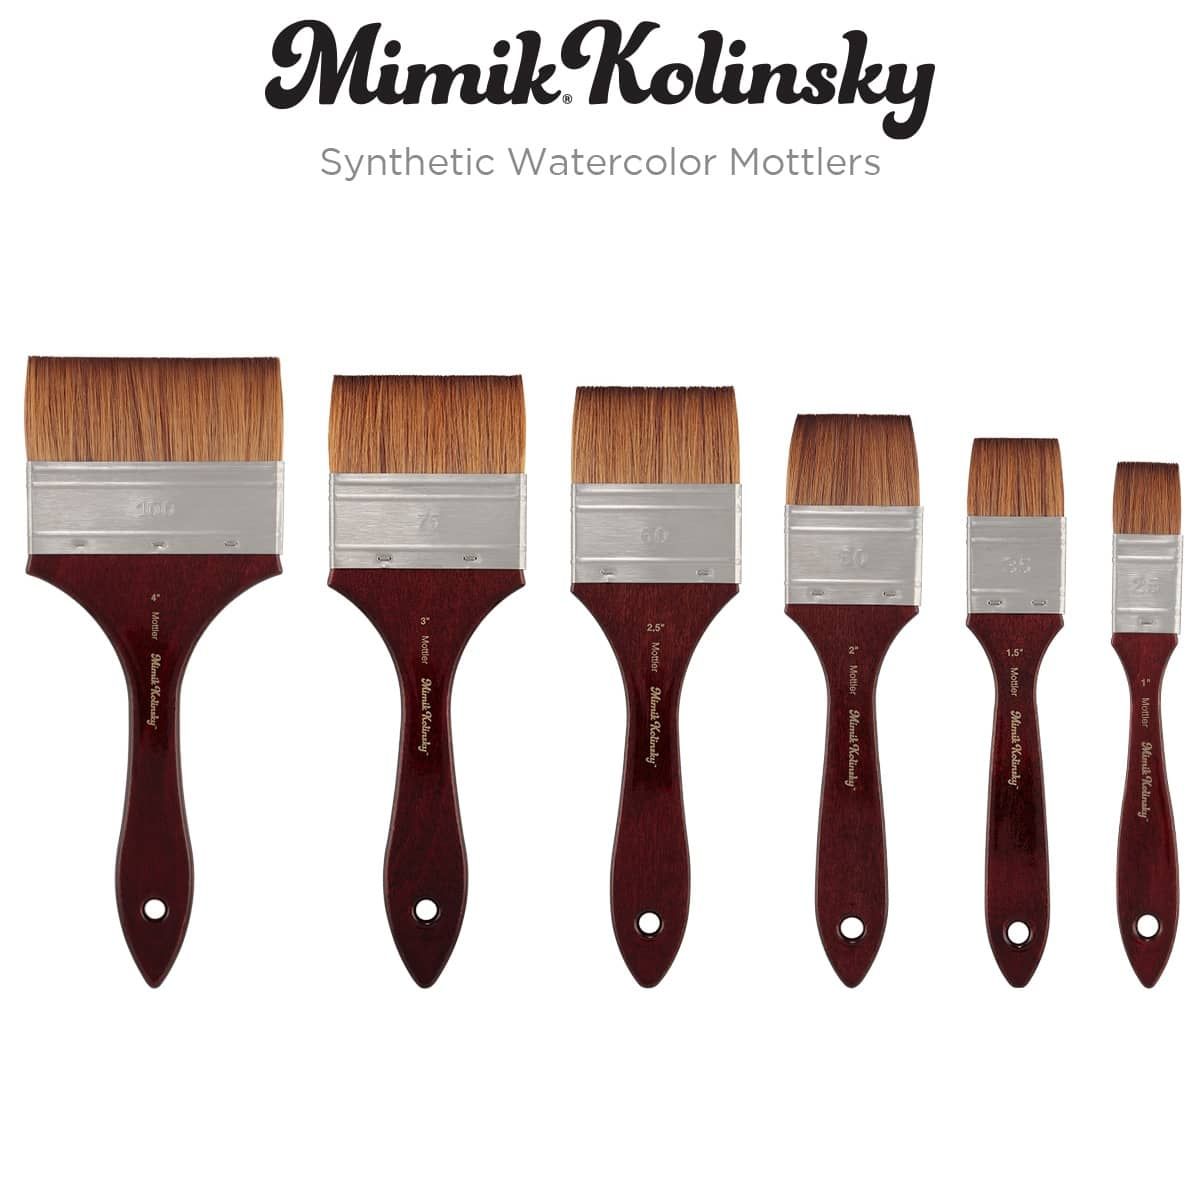 Mimik Kolinsky Synthetic Watercolor Mottlers